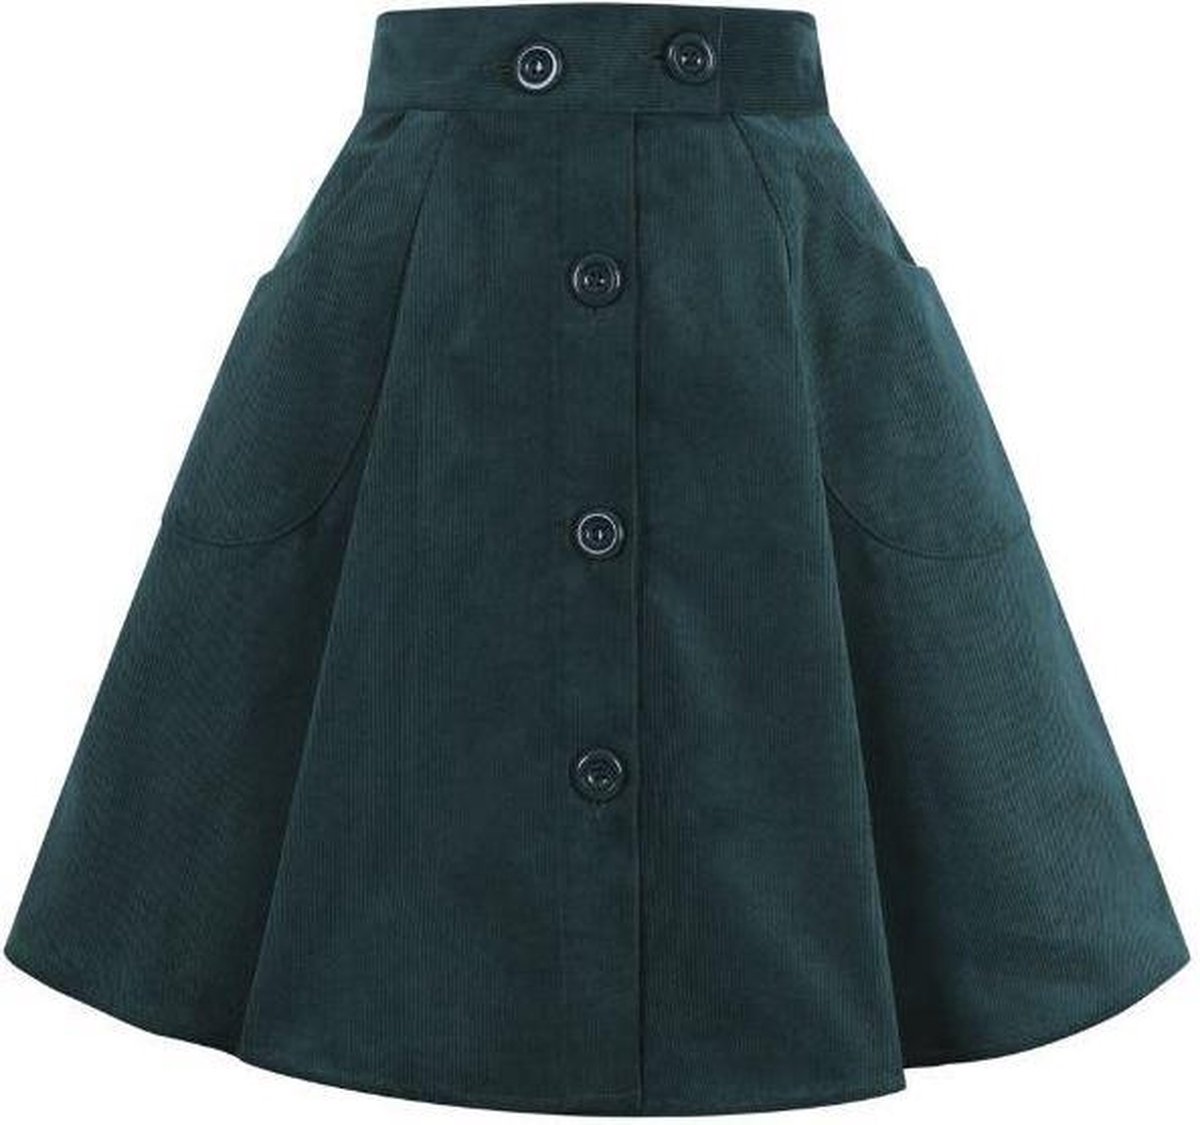 Fina Skirt Green in Swing Vintage Jaren 50 Stijl